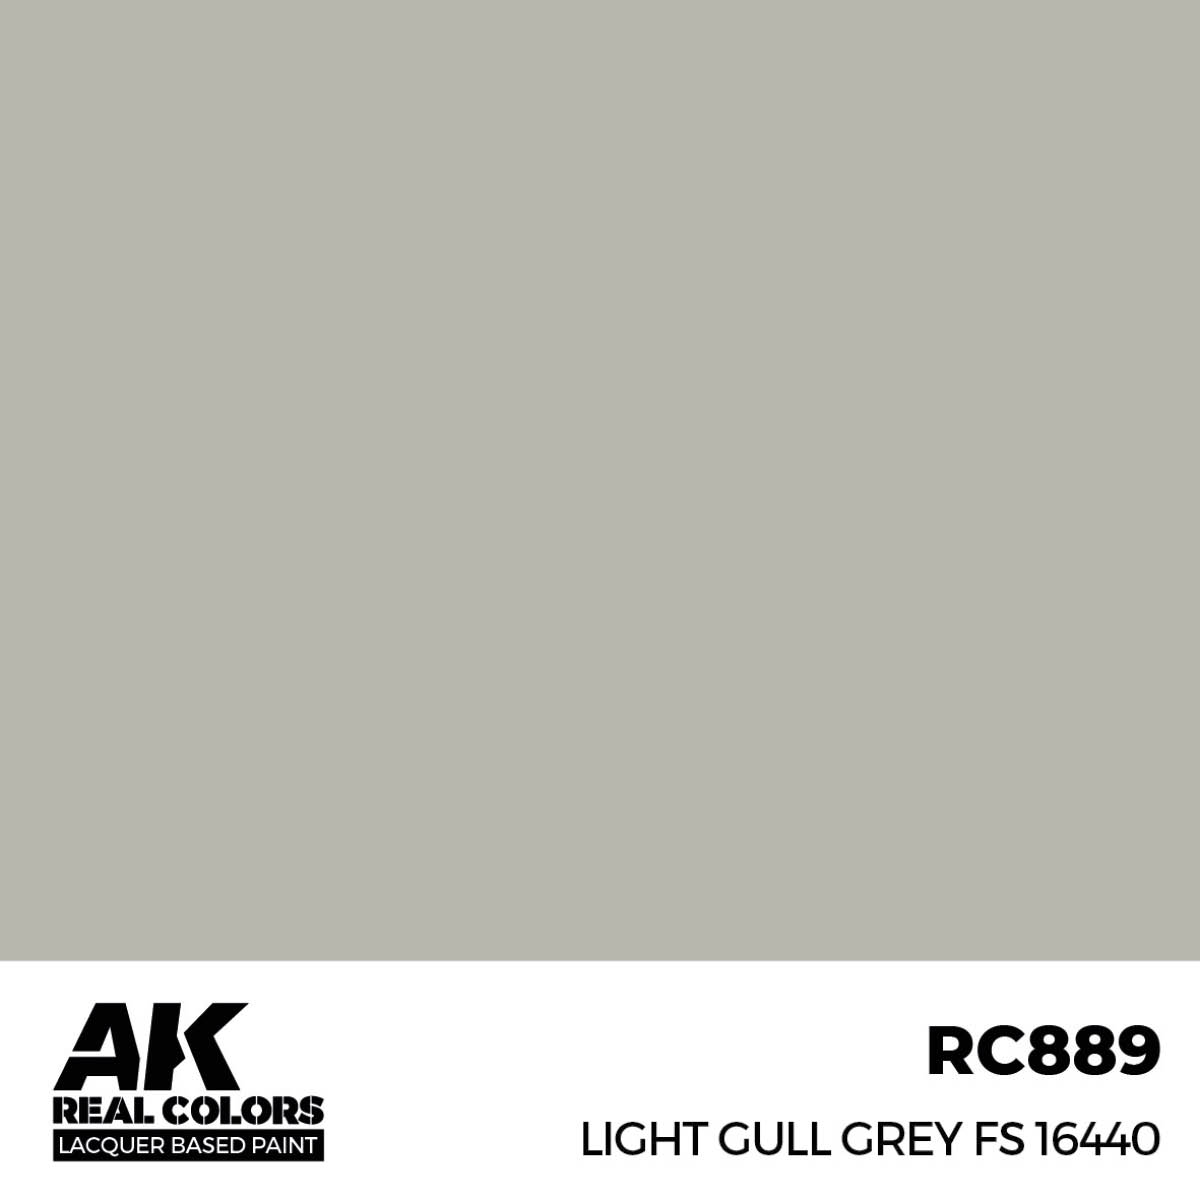 Light Gull Grey FS 16440